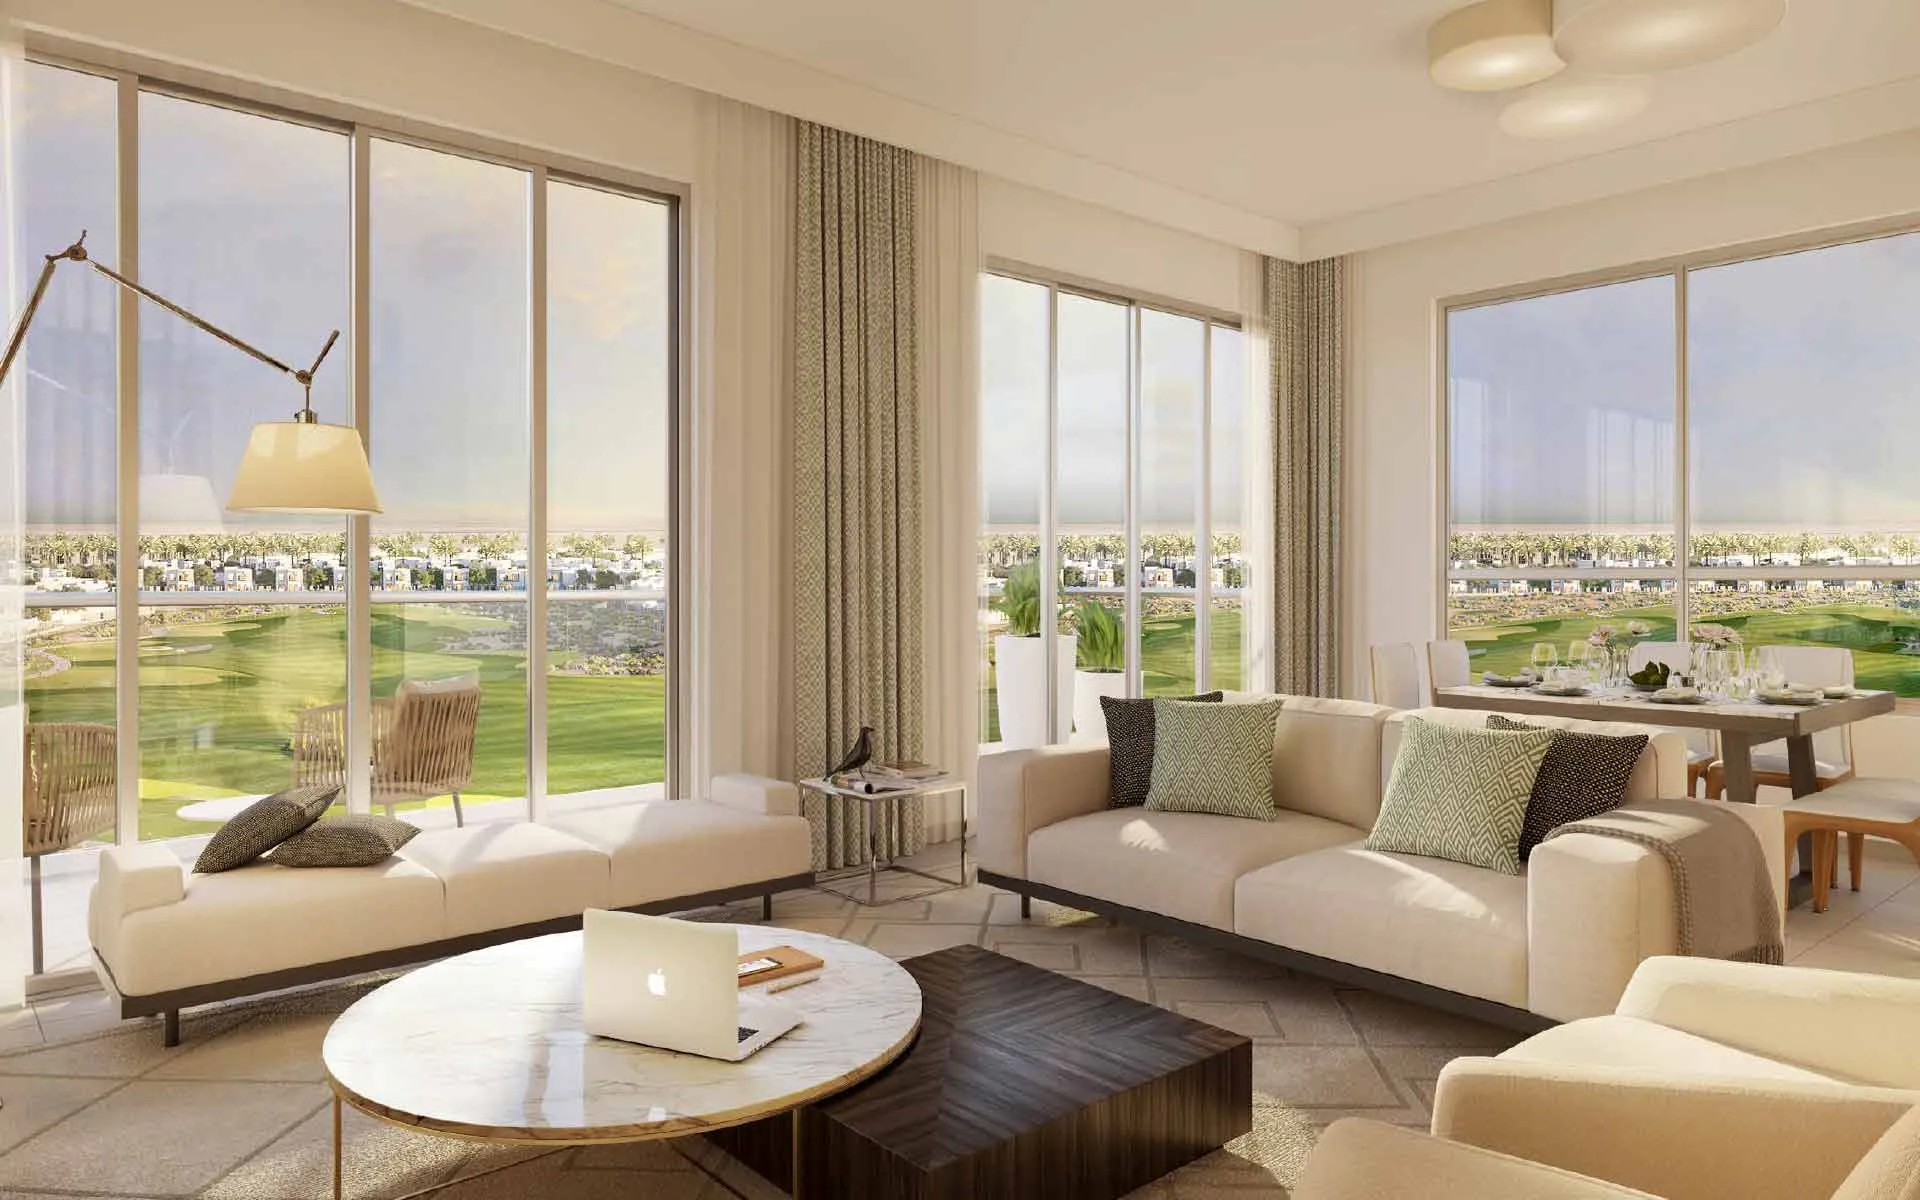 Edge-Realty-Эксклюзивные апартаменты с тремя спальнями рядом с 18-луночным полем для гольфа